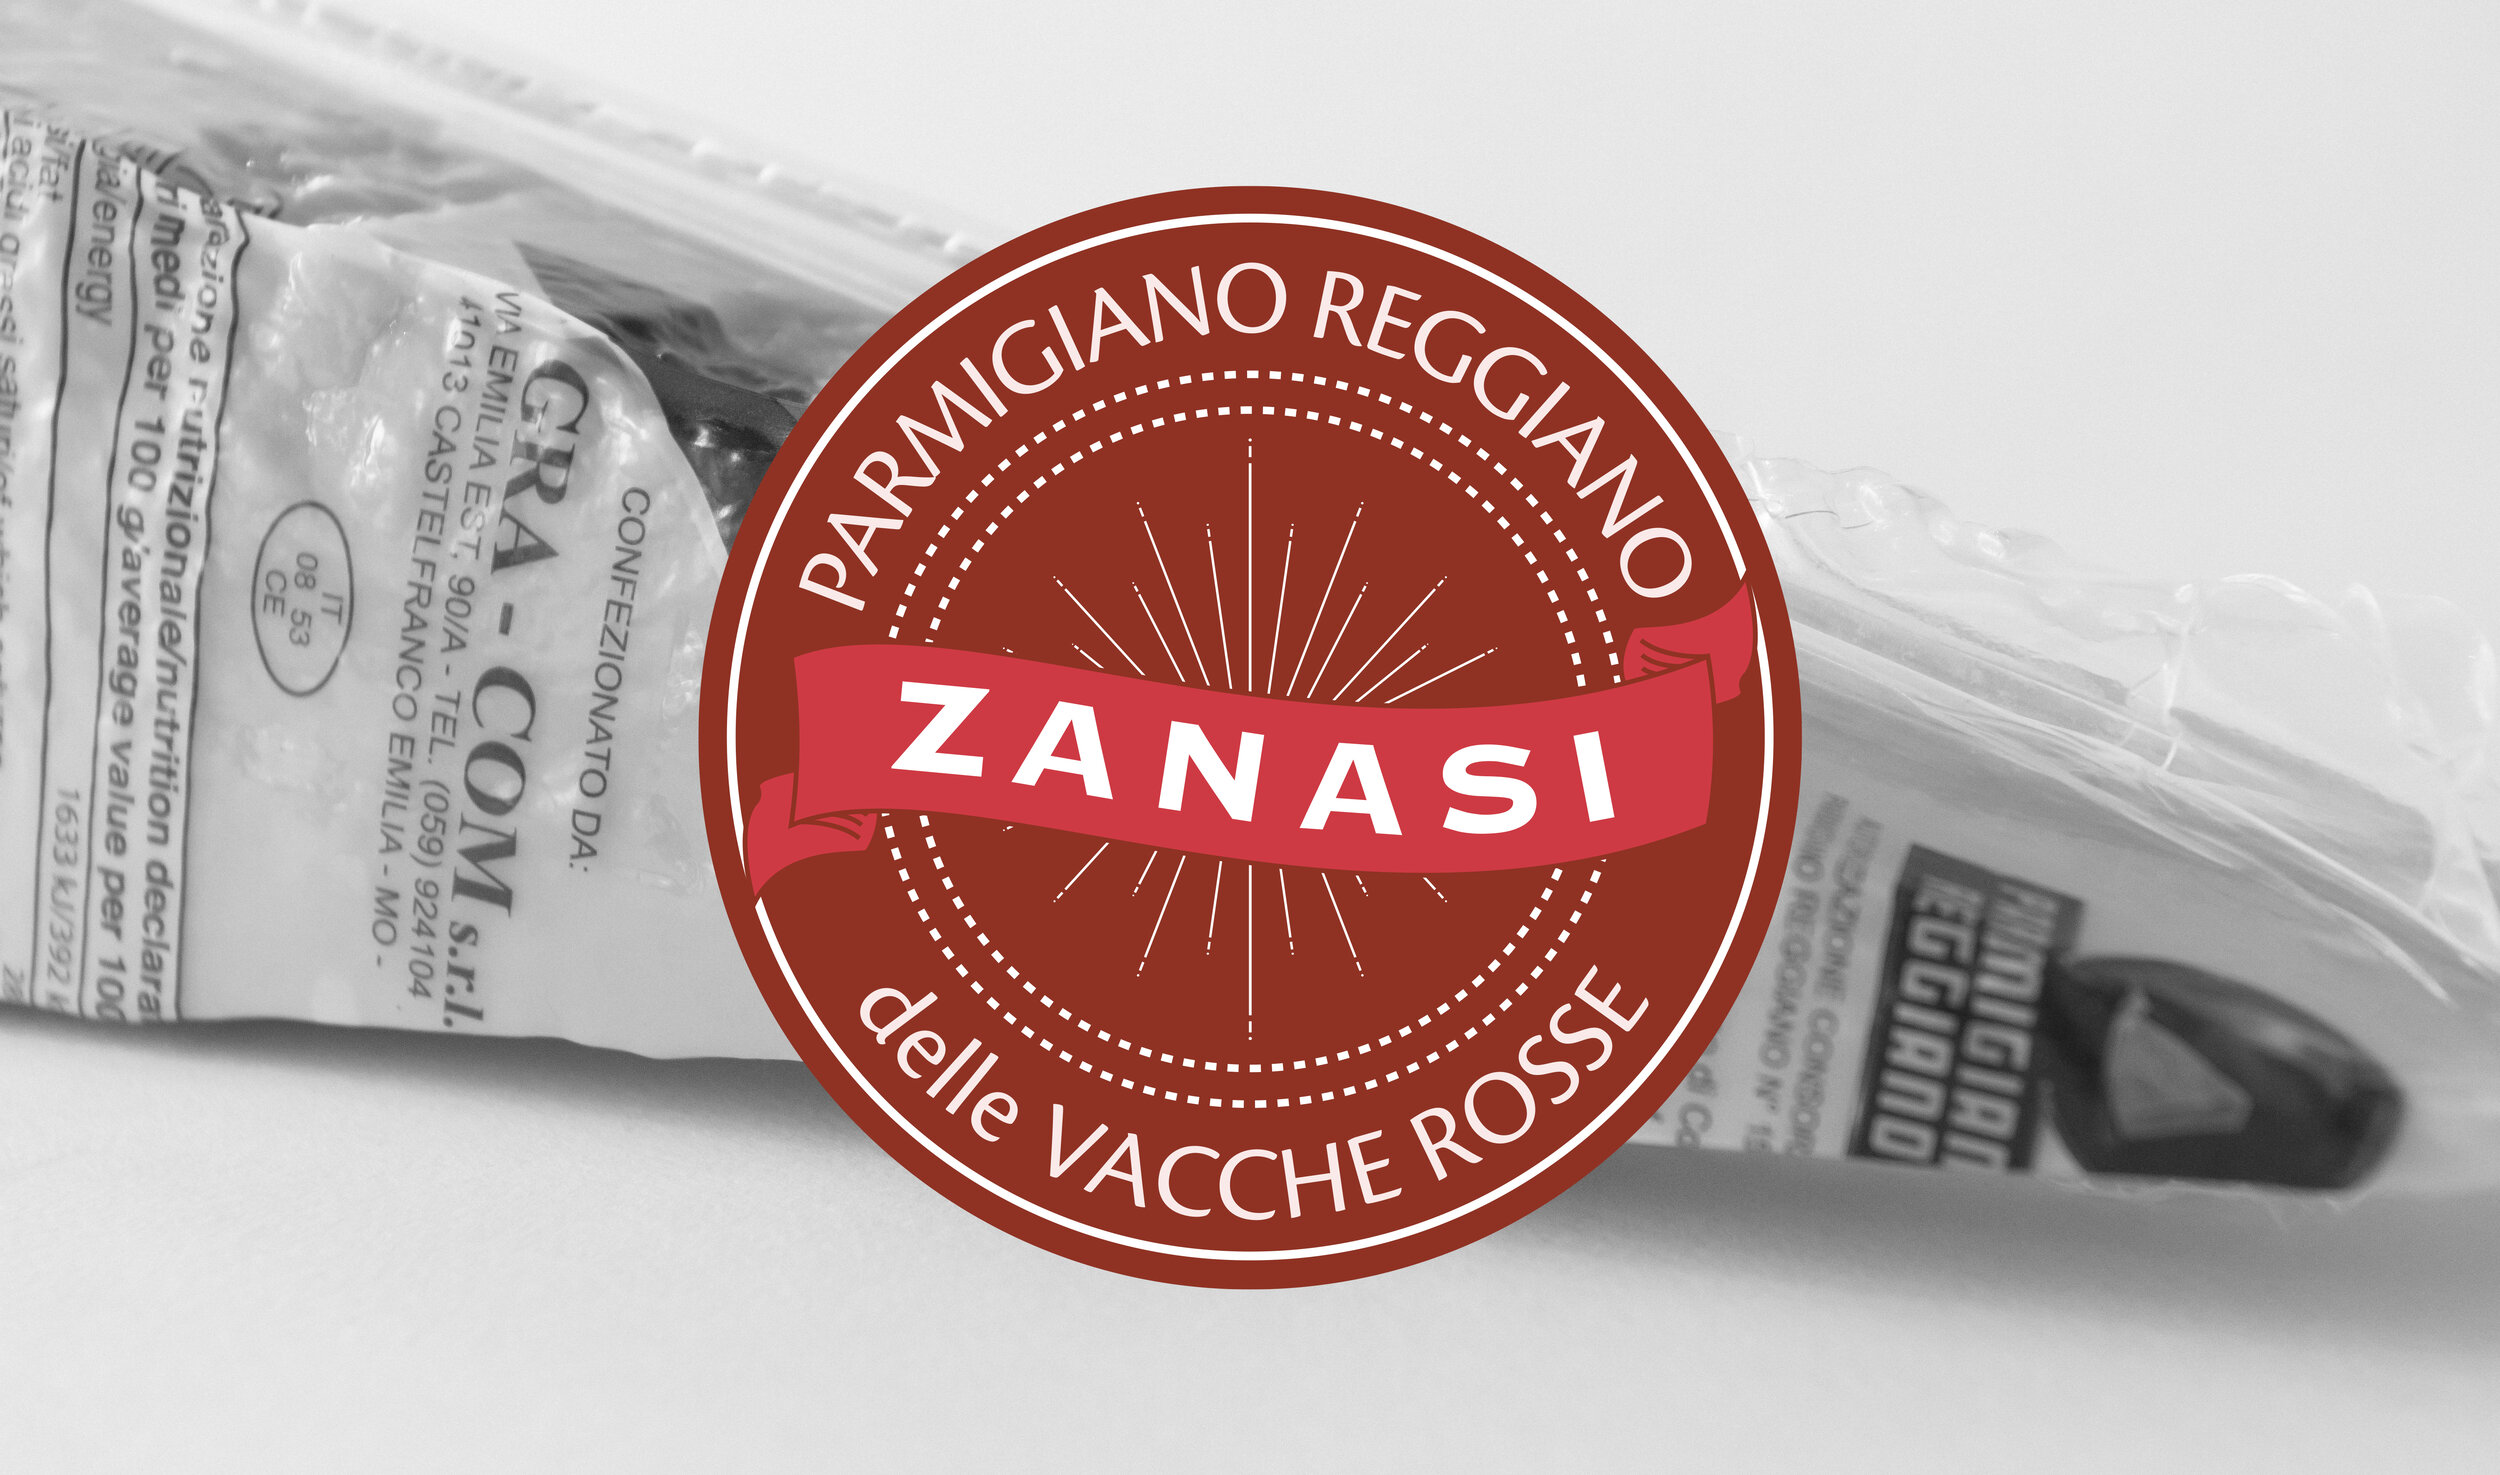 Novità! Ora disponibile il Parmigiano Reggiano delle Vacche Rosse Zanasi